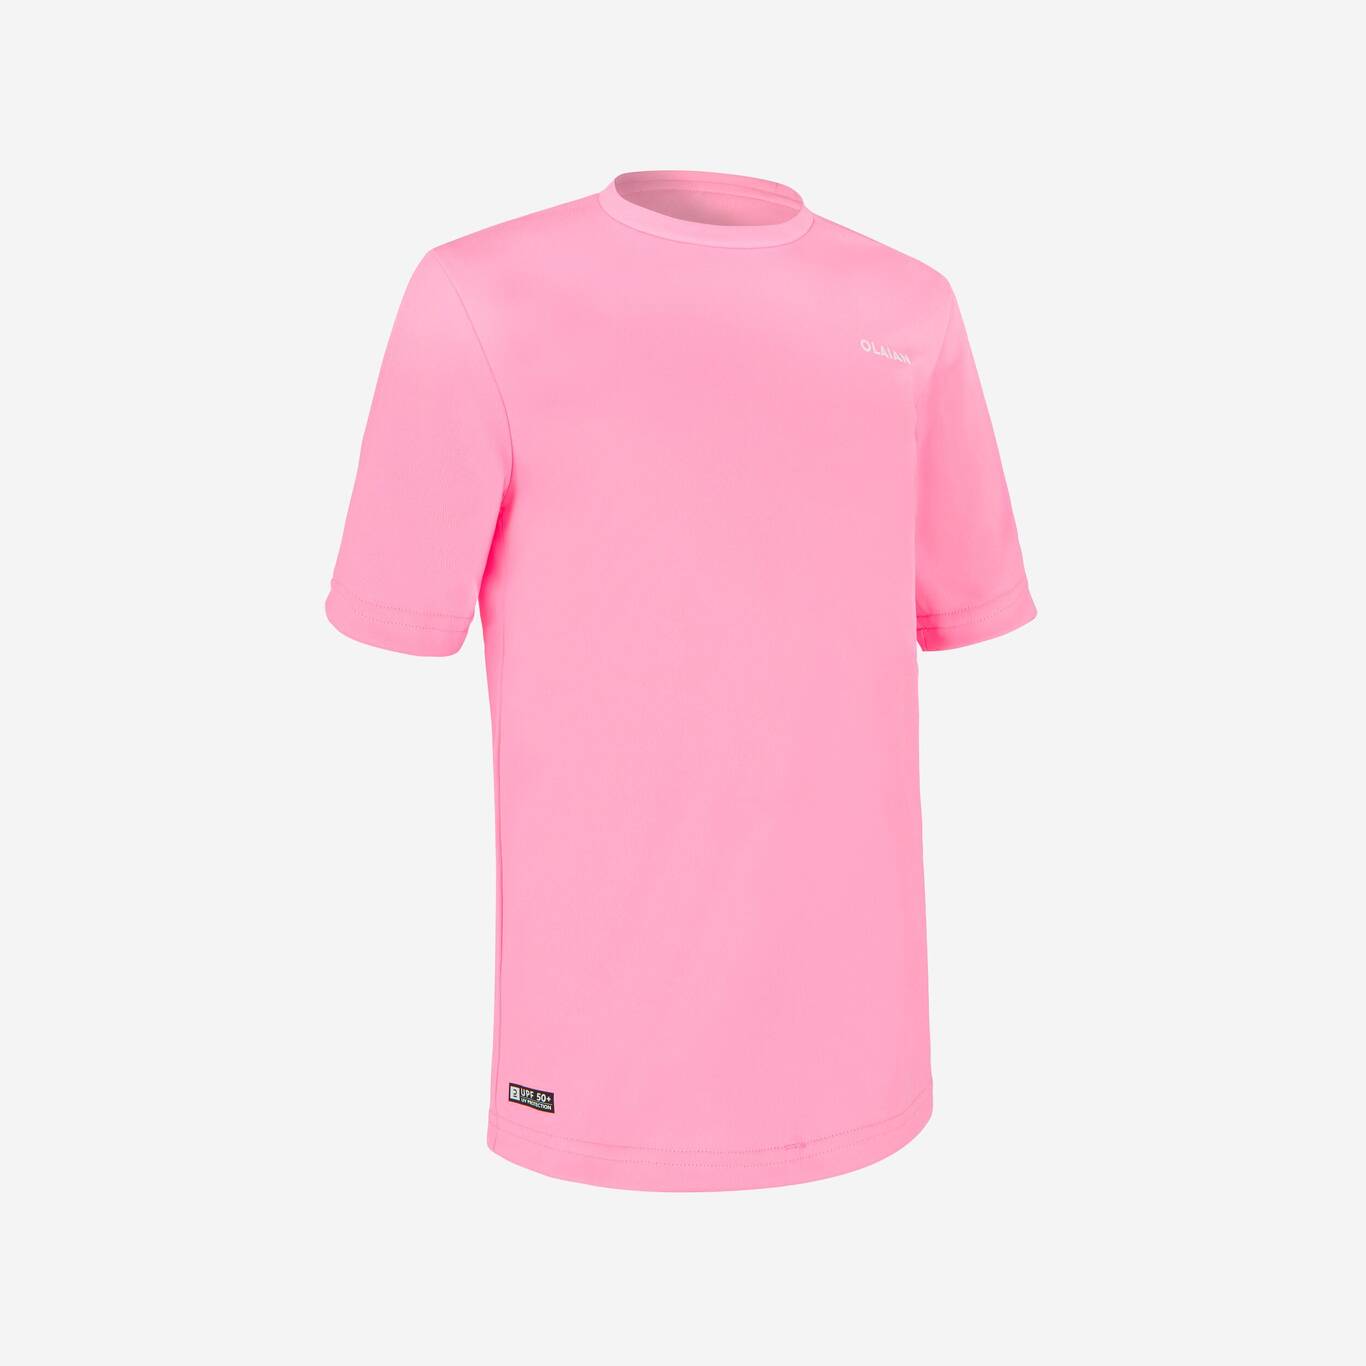 Kaos anak anti UV olahraga air pink